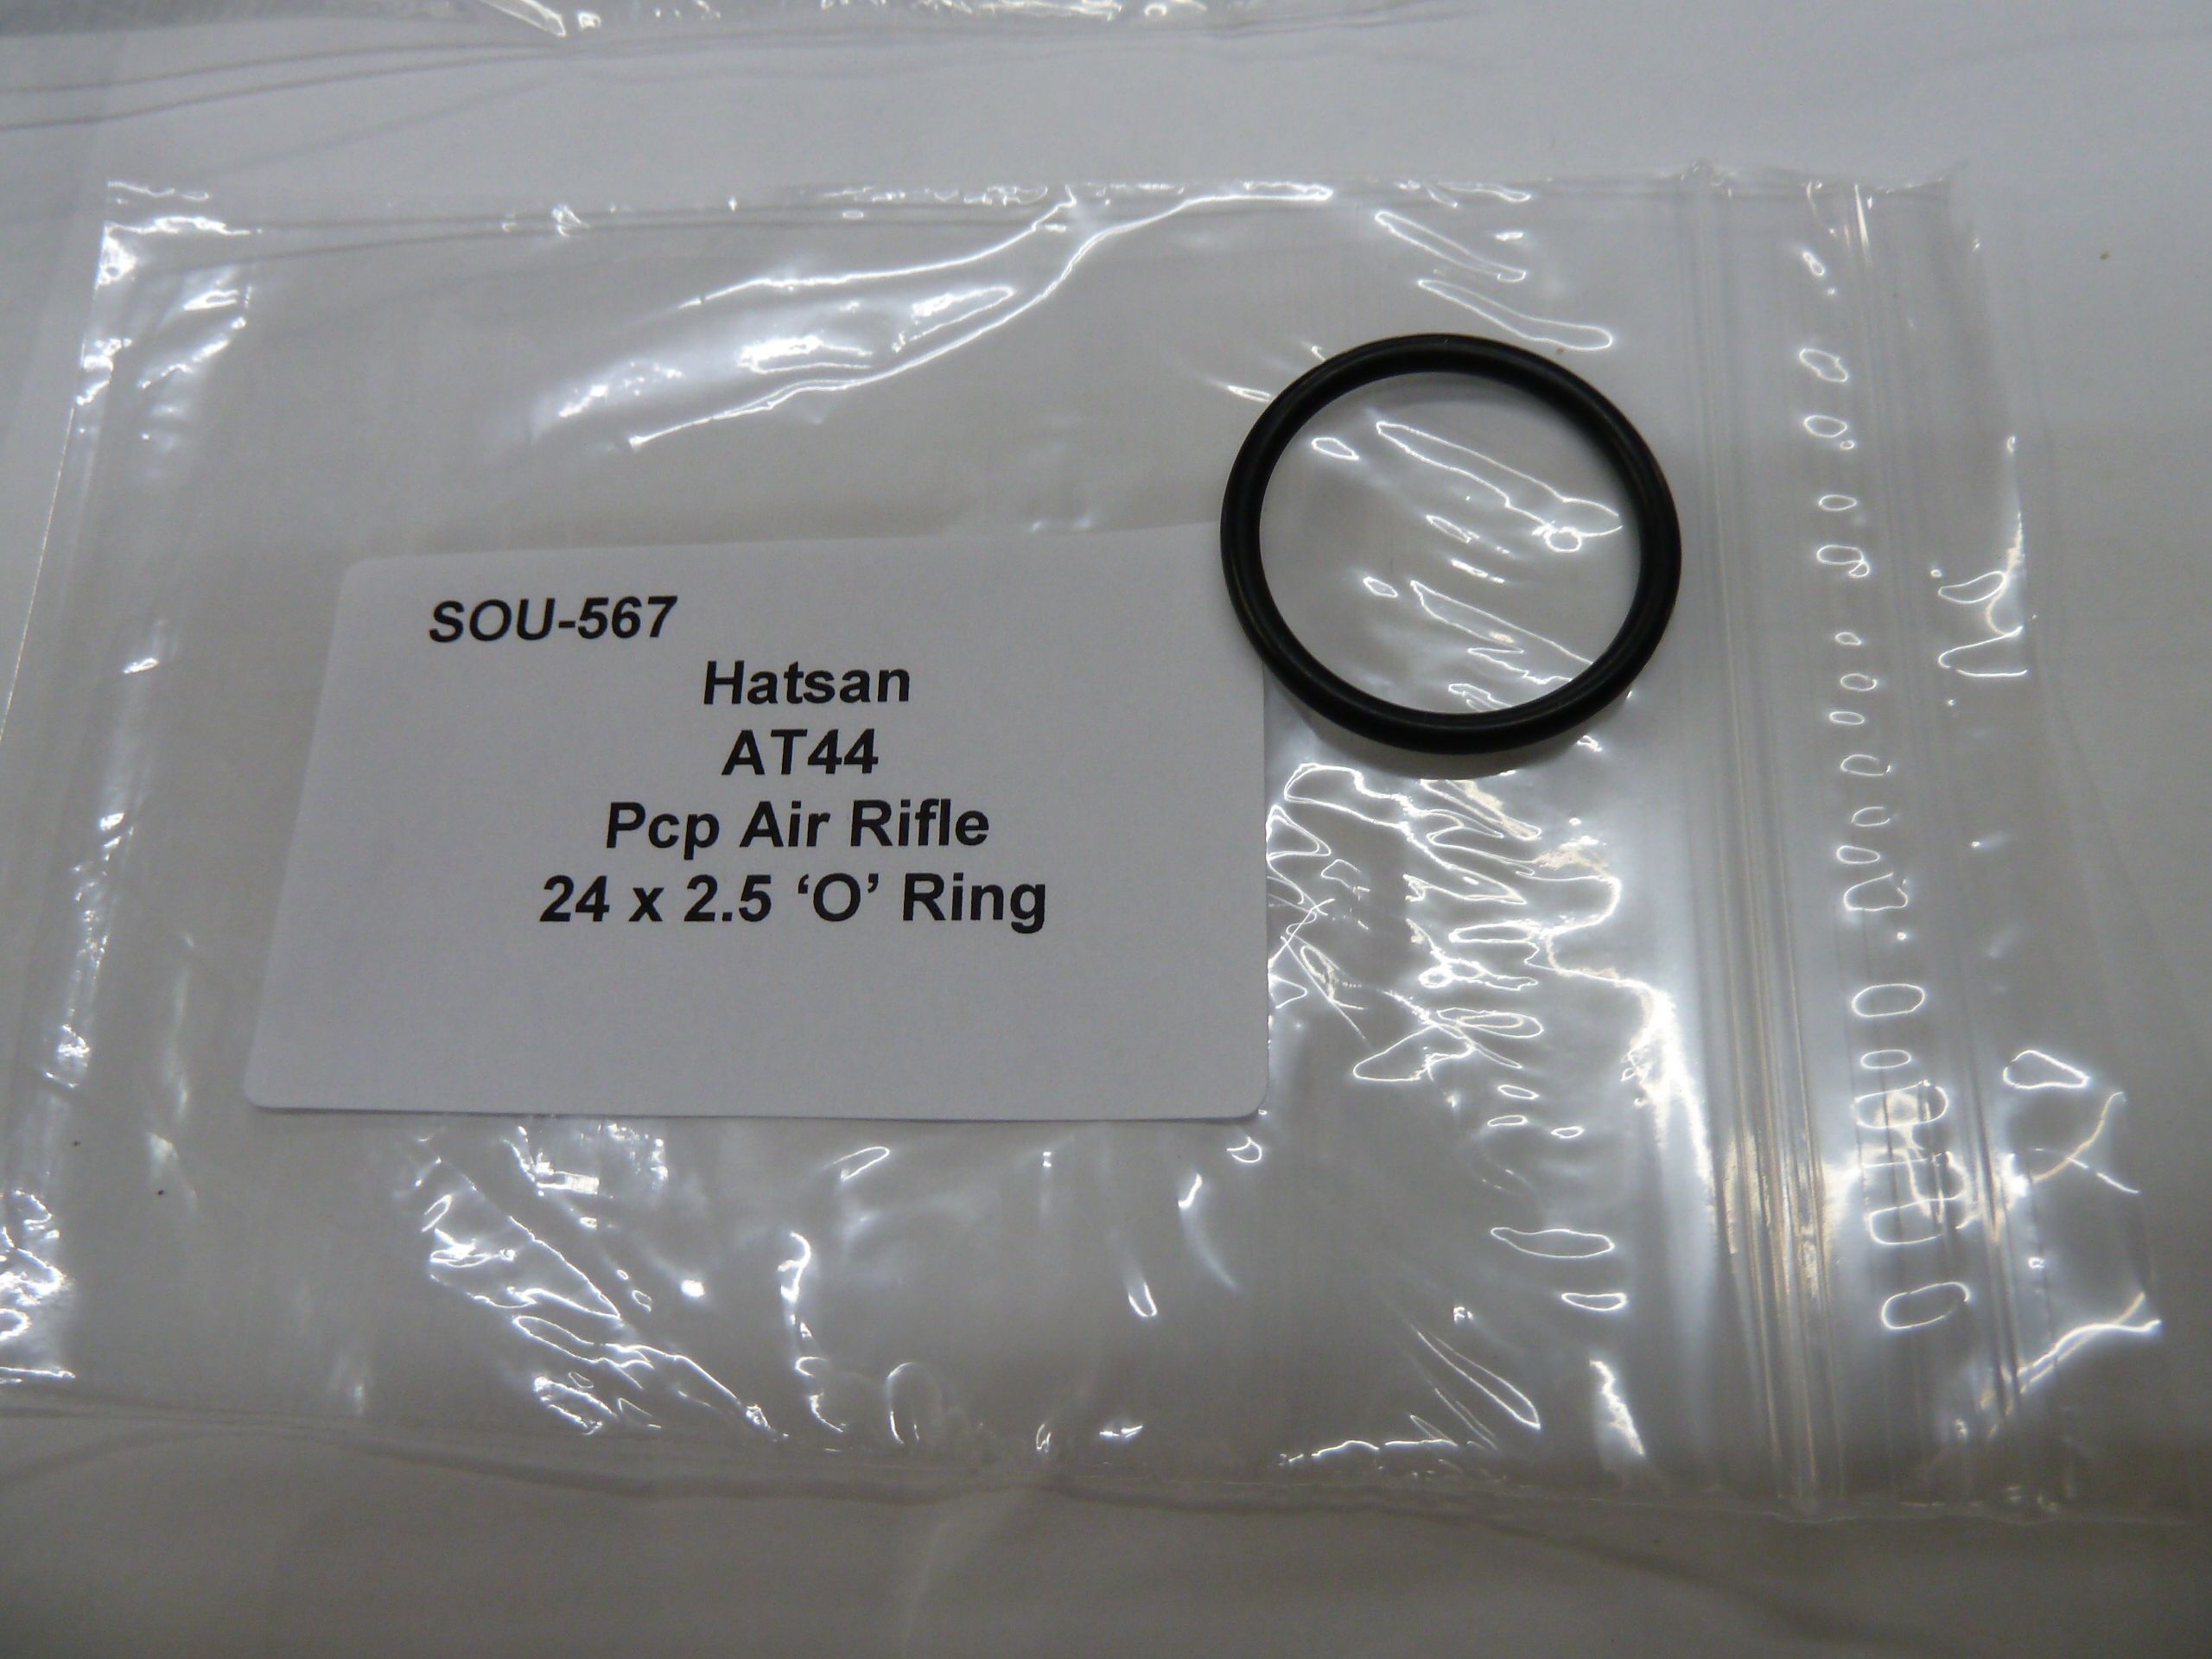 SOU-567 Hatsan At44 pcp Air Rifle 24 x 2.5 O Ring